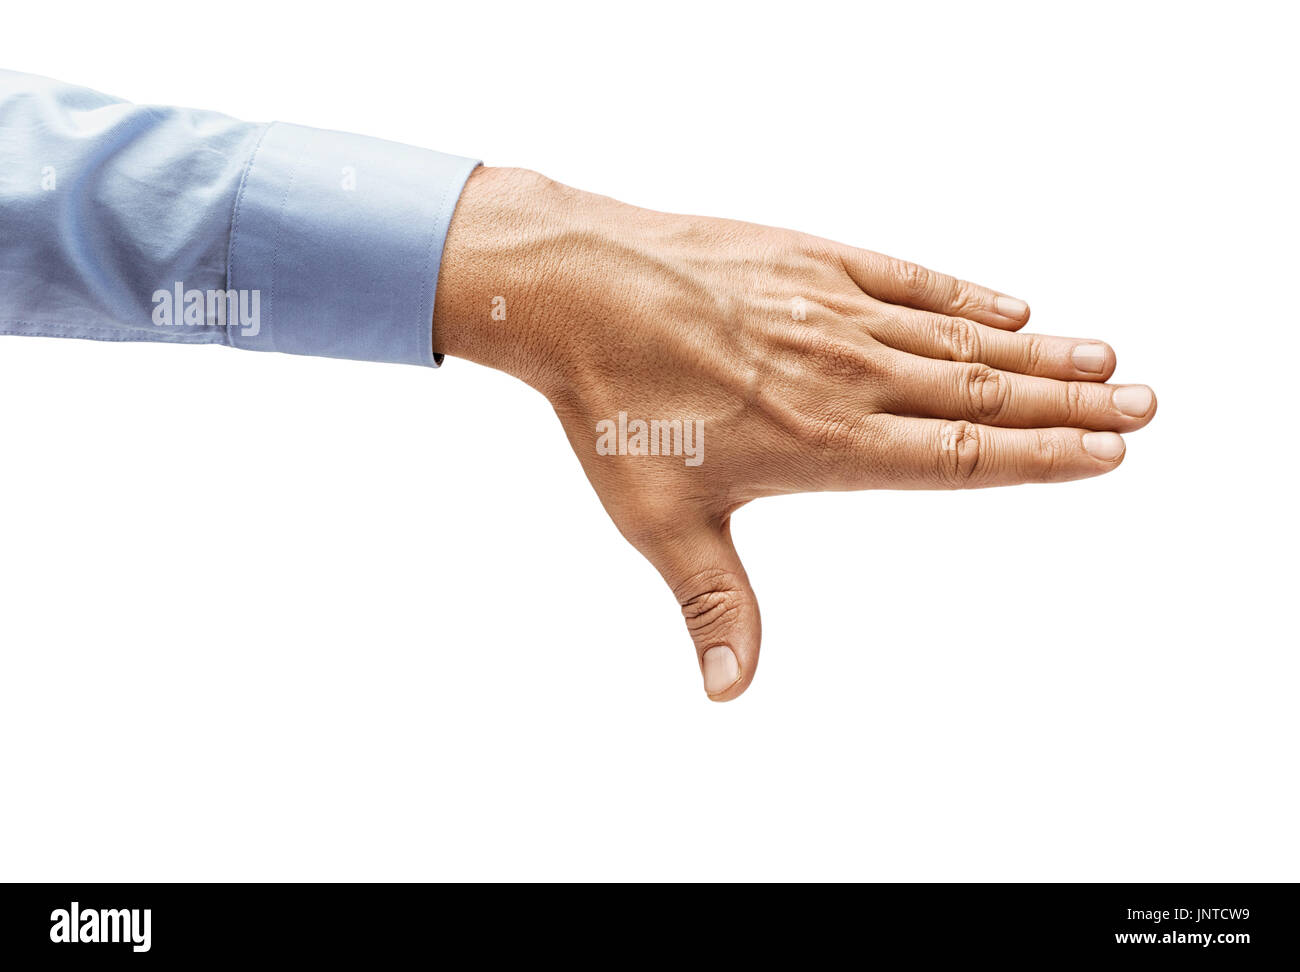 Die Hand des Mannes in einem Hemd schließt etwas isoliert auf weißem Hintergrund. Hautnah. Hohe Auflösung-Produkt Stockfoto